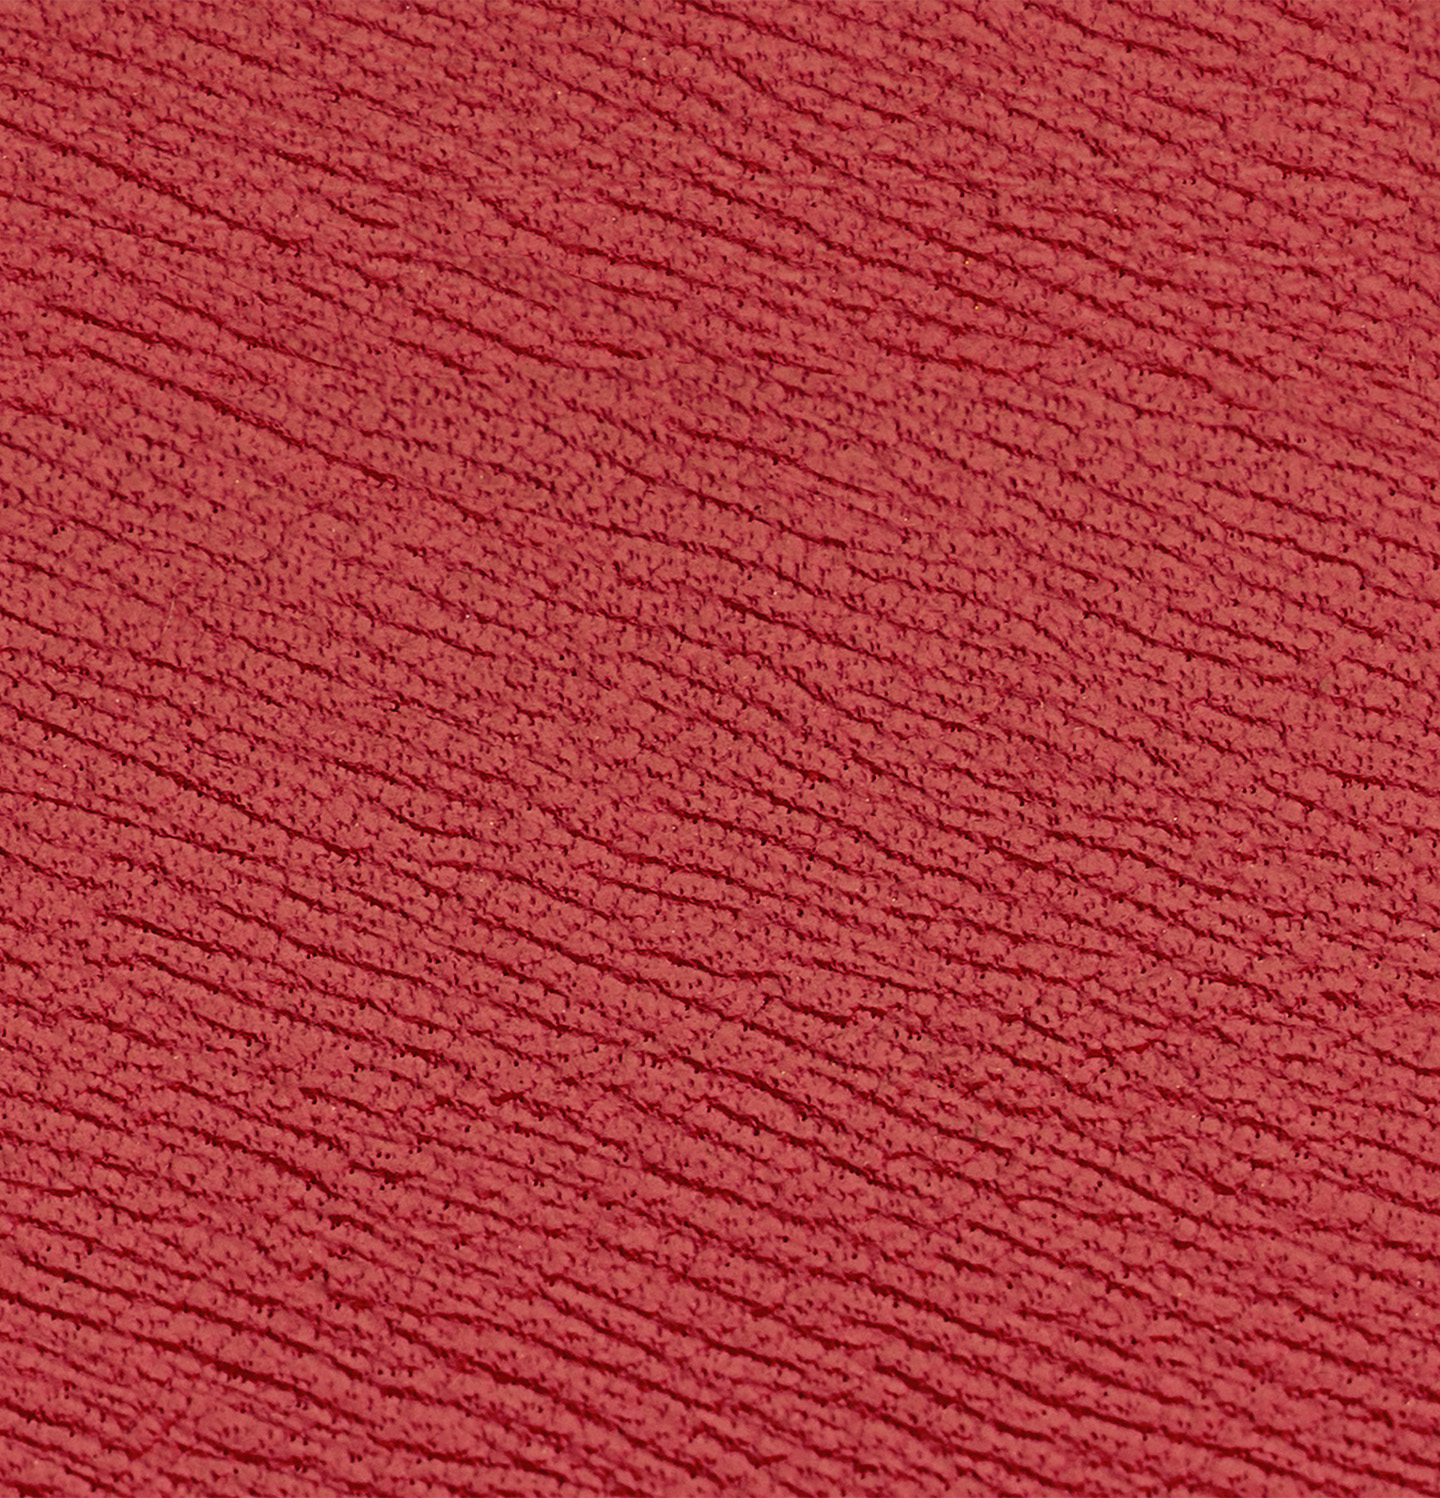 Red leather case - La bouche rouge, Paris